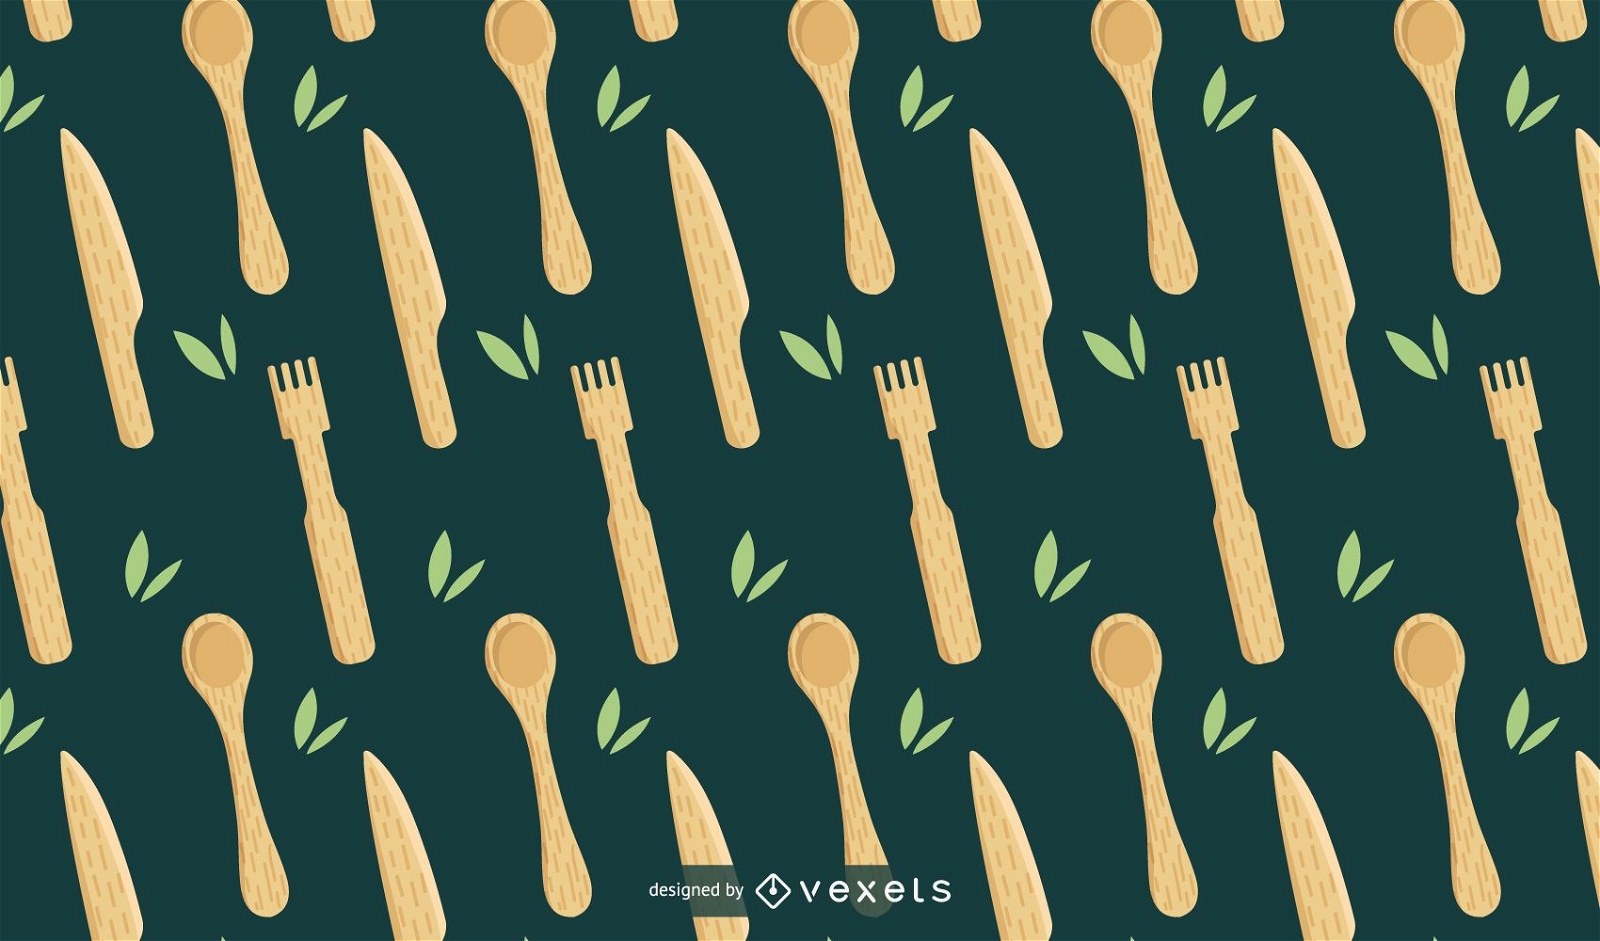 Bamboo kitchen utensils pattern design